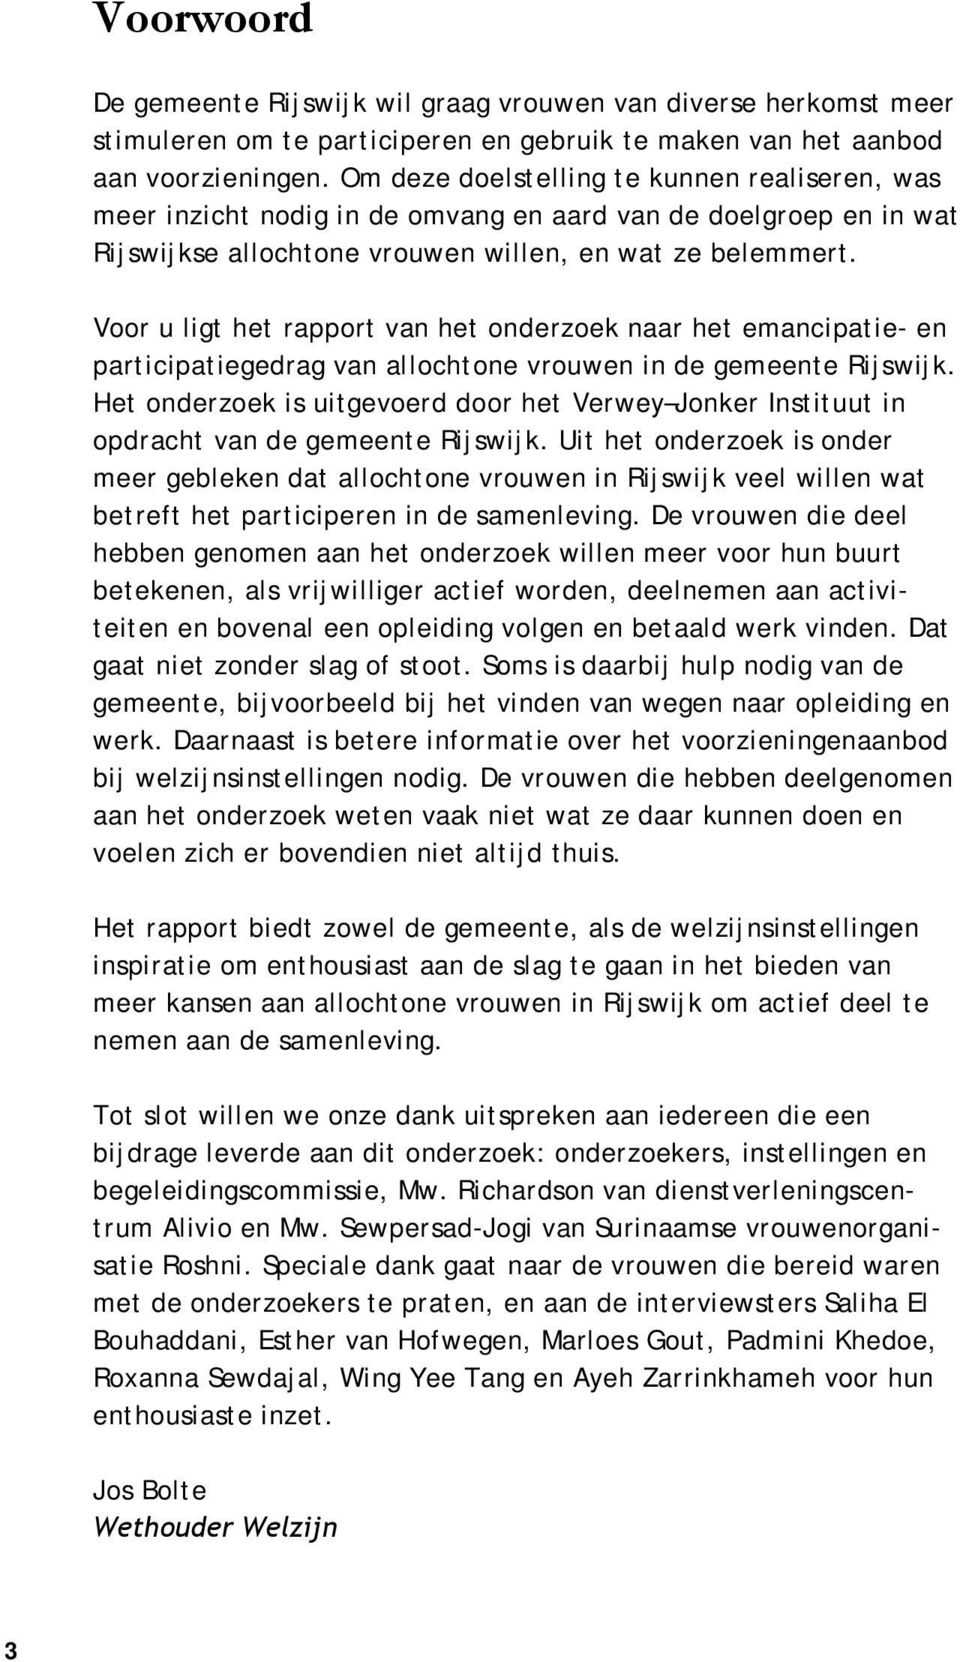 Voor u ligt het rapport van het onderzoek naar het emancipatie- en participatiegedrag van allochtone vrouwen in de gemeente Rijswijk.